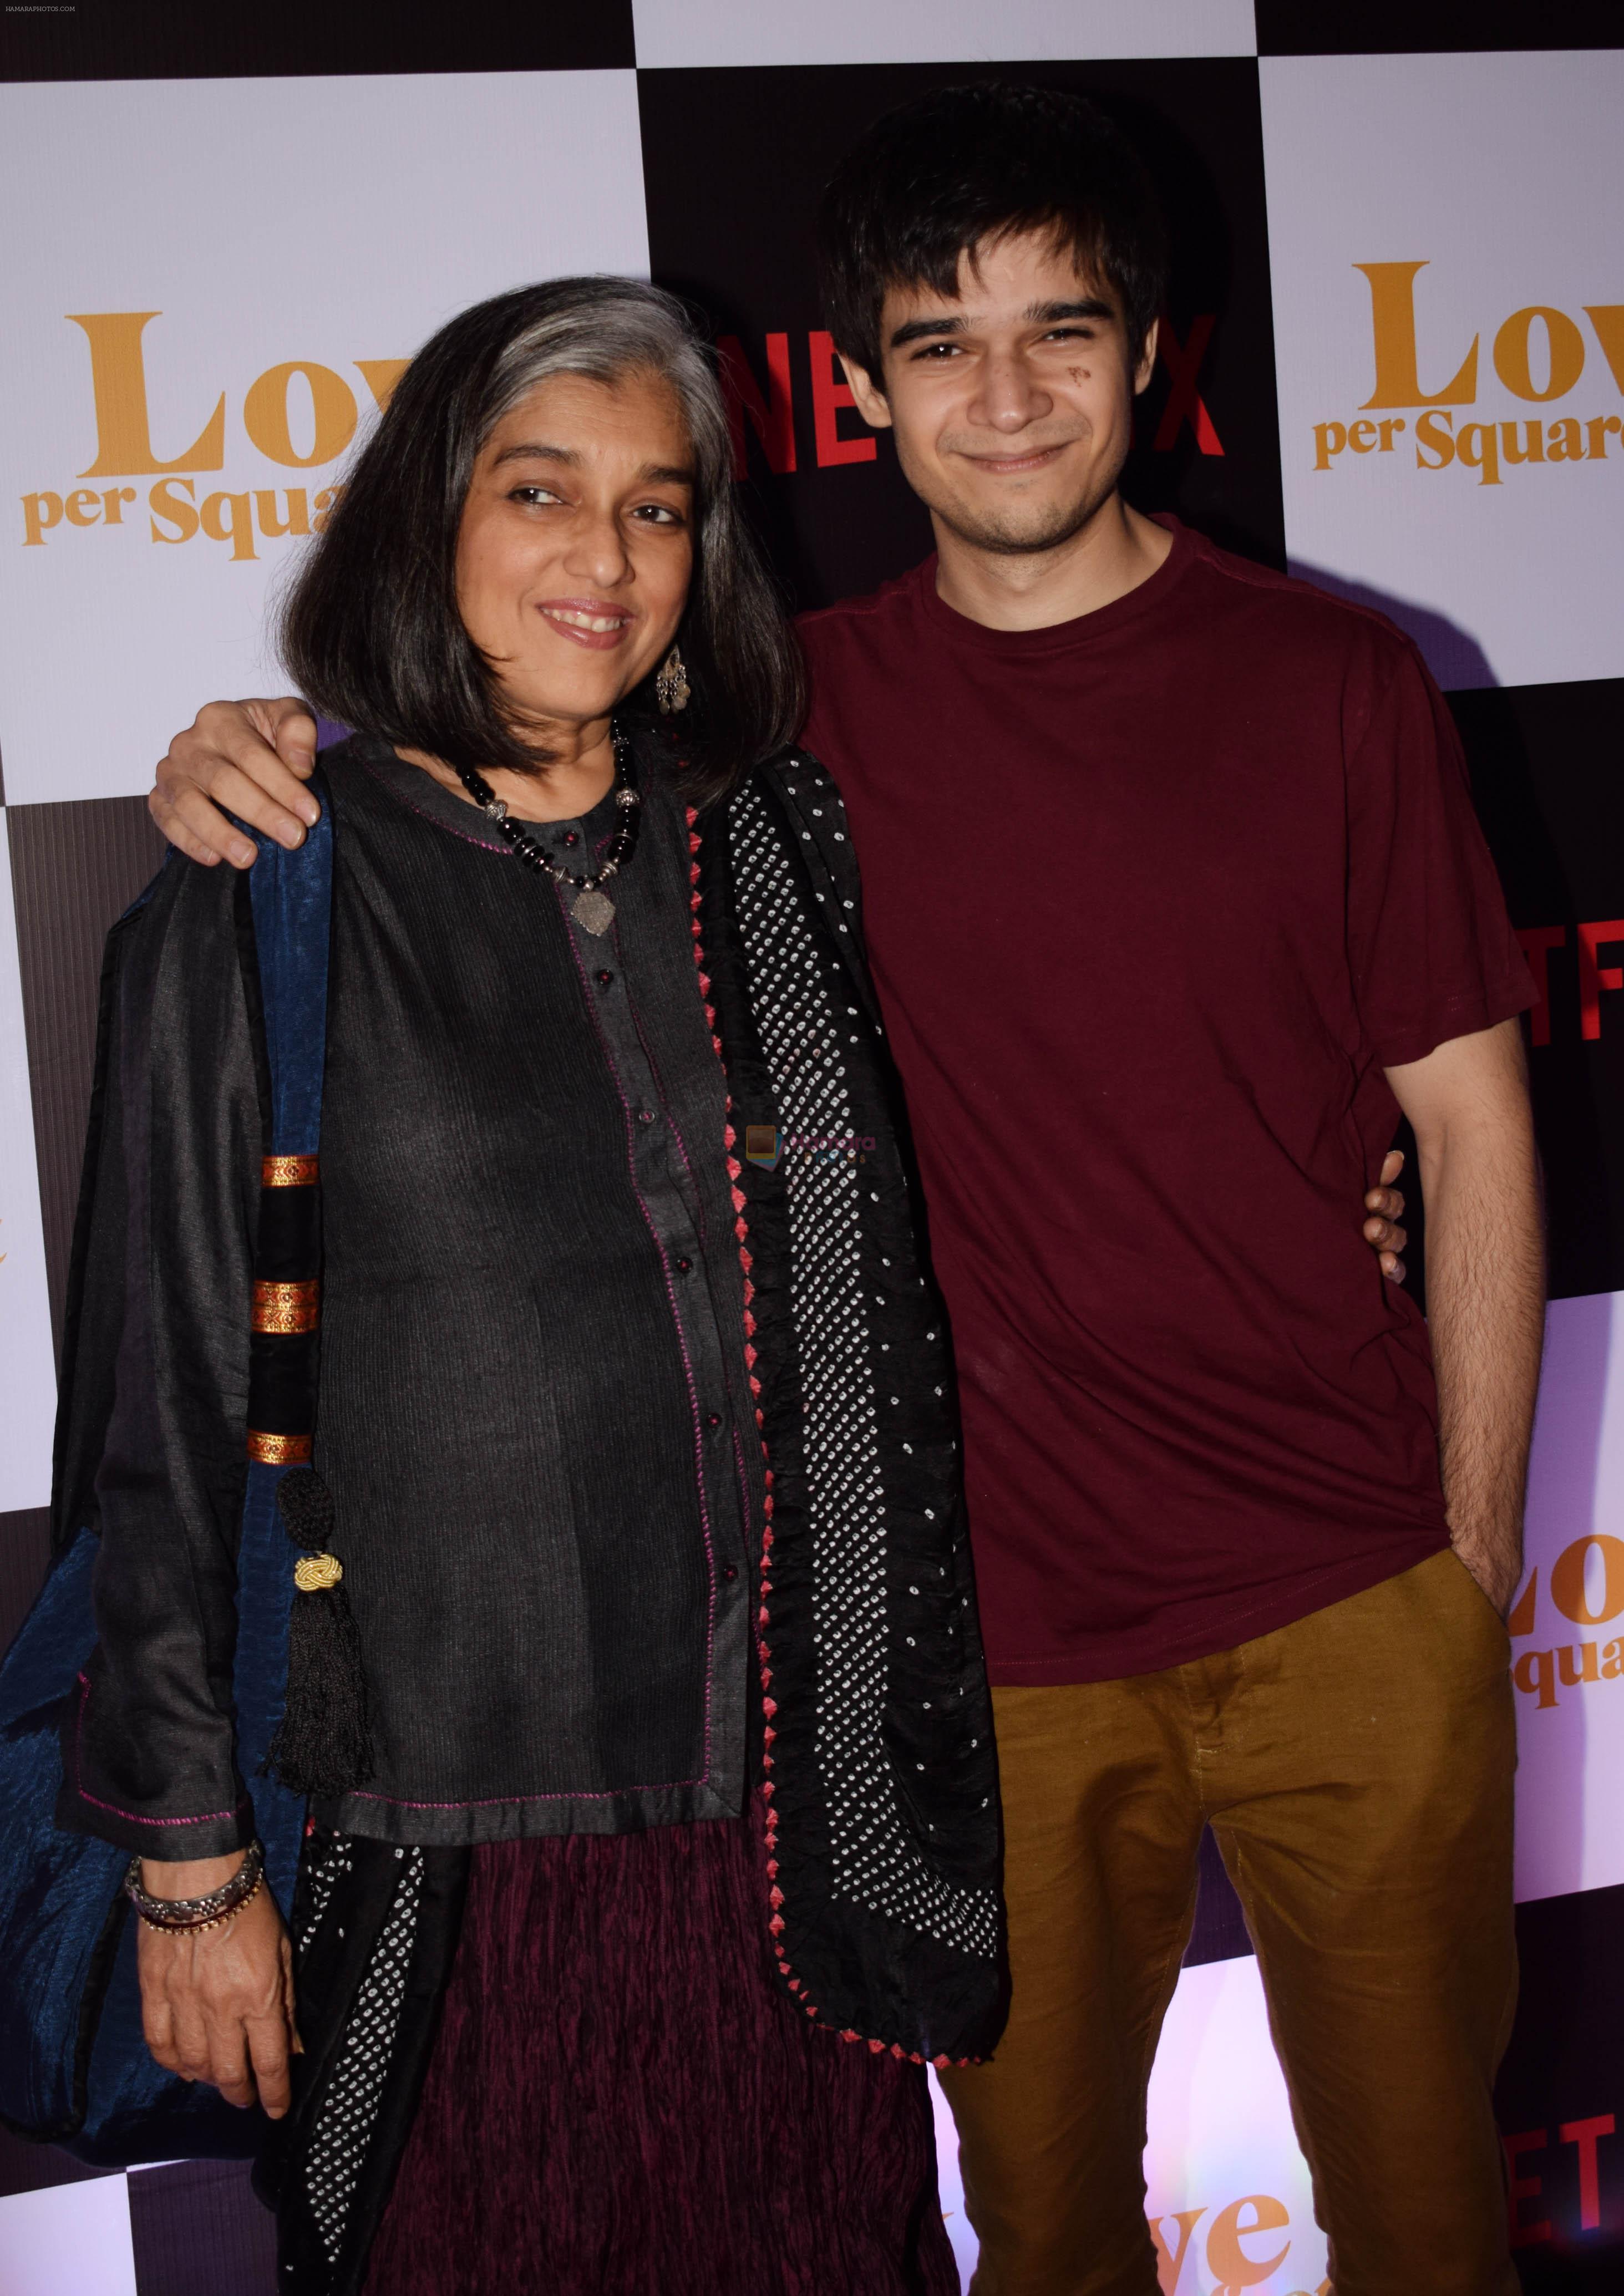 Ratna Pathak Shah, Vivaan Shah at the Screening of Ronnie Screwvala's film Love per square foot in Cinepolis, Andheri, Mumbai on 10th Feb 2018